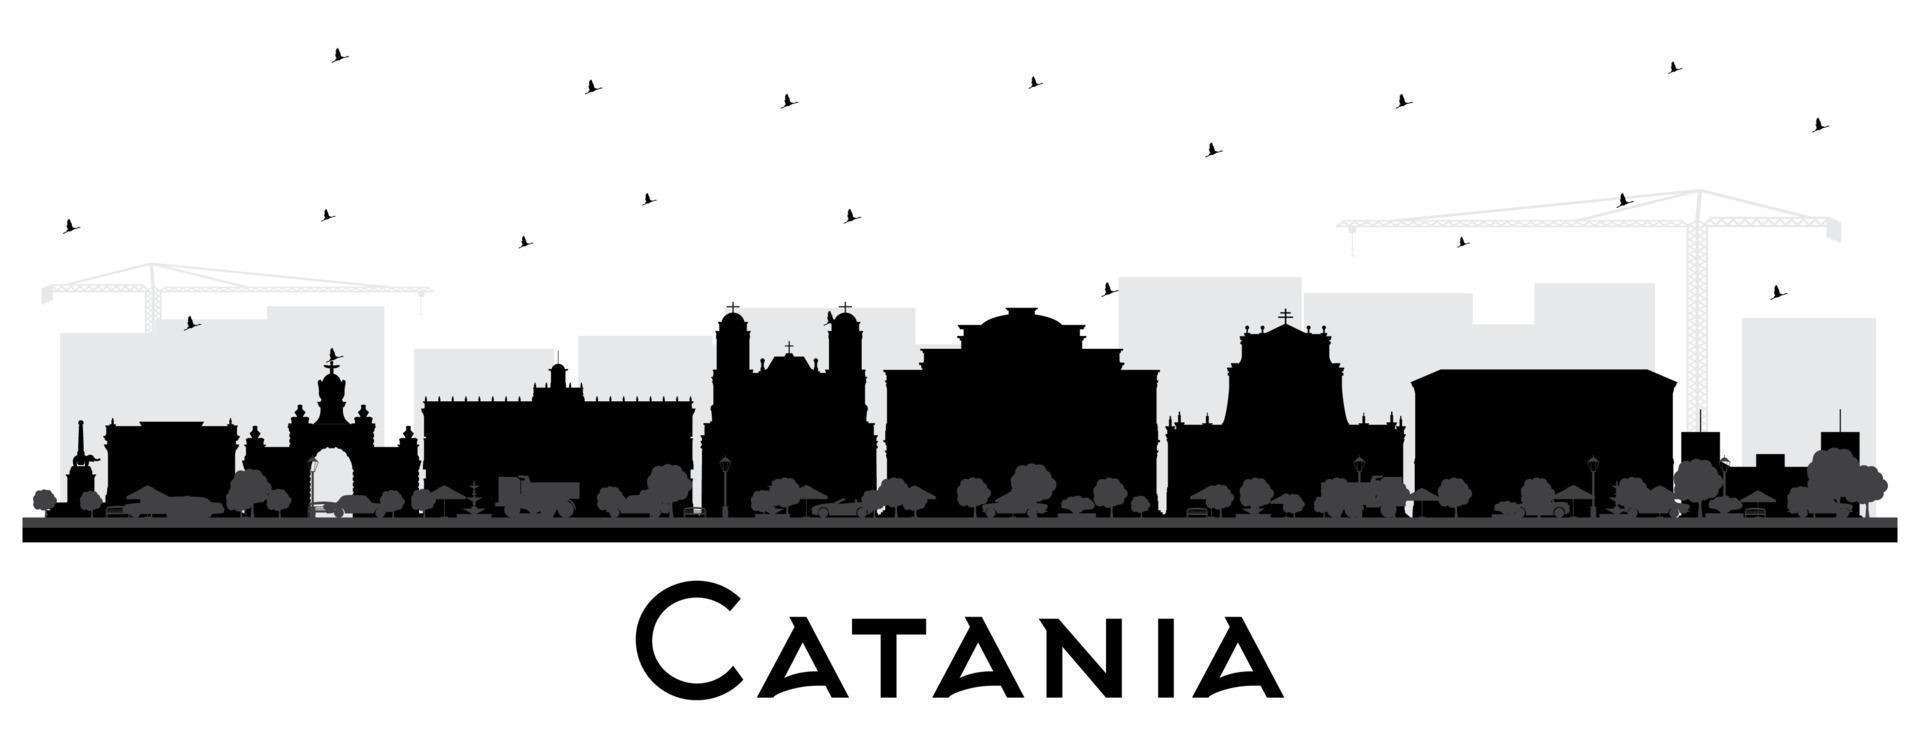 catania italien city skyline silhouette mit schwarzen gebäuden isoliert auf weiß. vektor